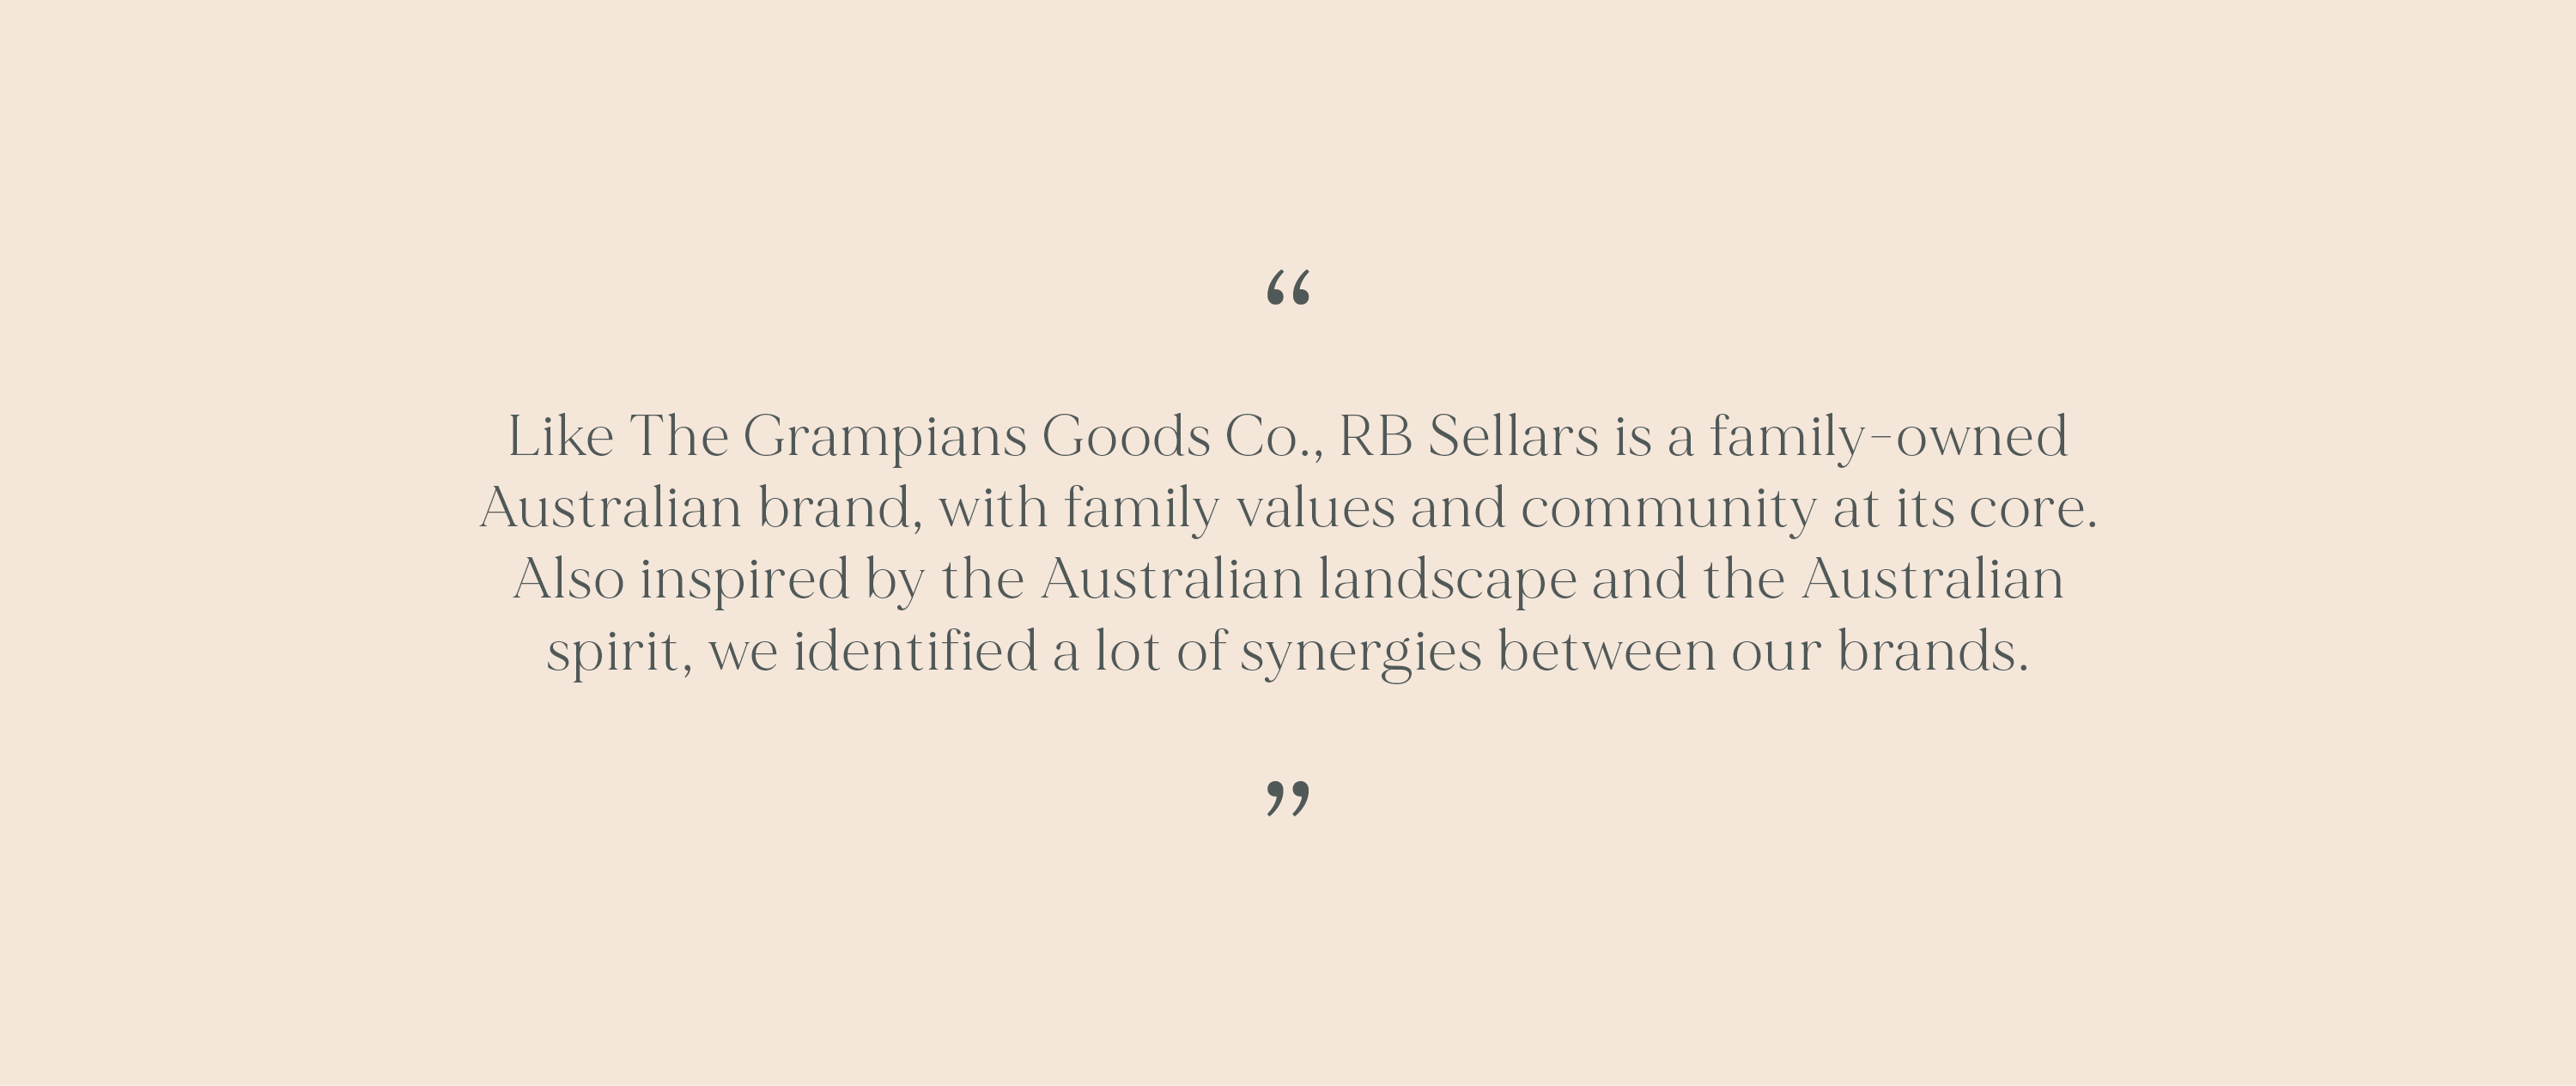 Grampians Goods Co.